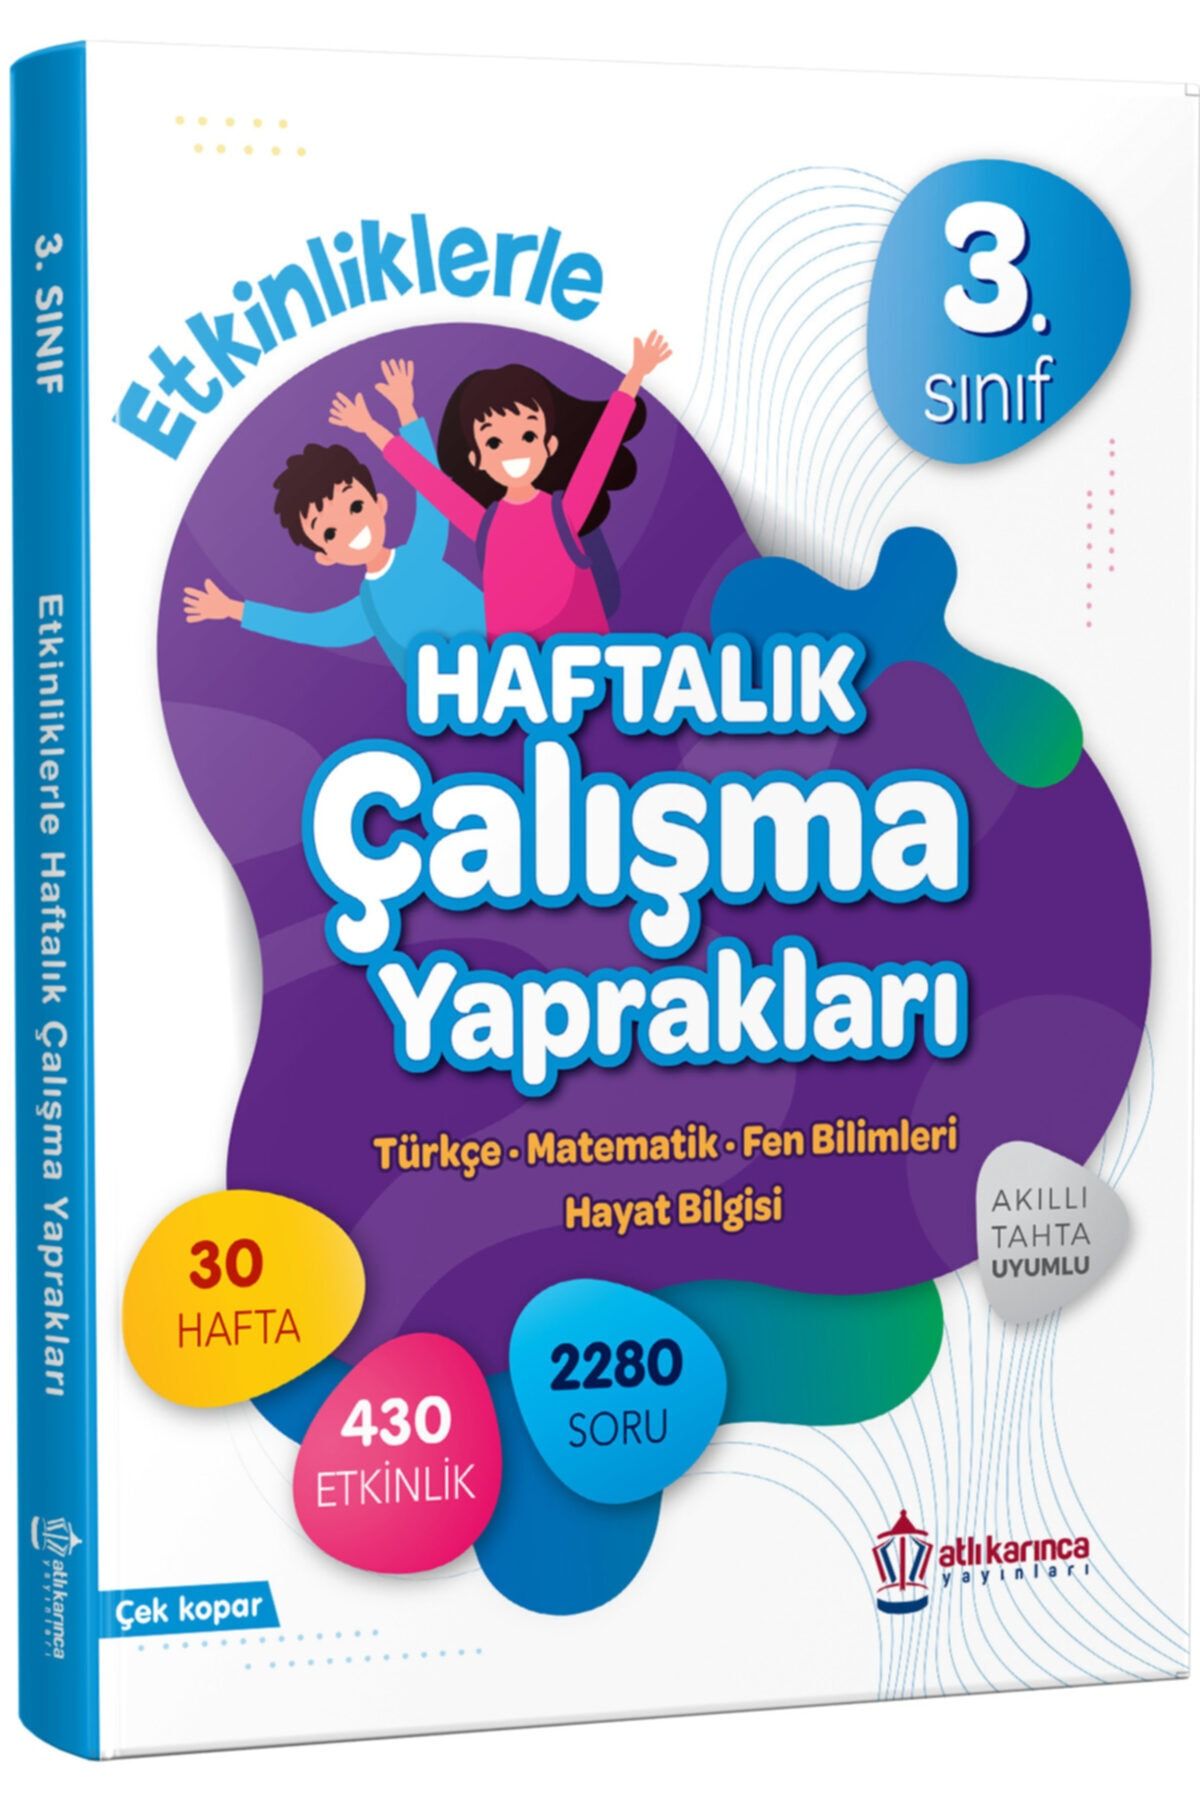 ATLIKARINCA YAYINLARI 3.sınıf Etkinliklerle Haftalık Çalışma Yaprakları (türkçe Fen Bilimleri Matematik Hayat Bilgisi)ödev